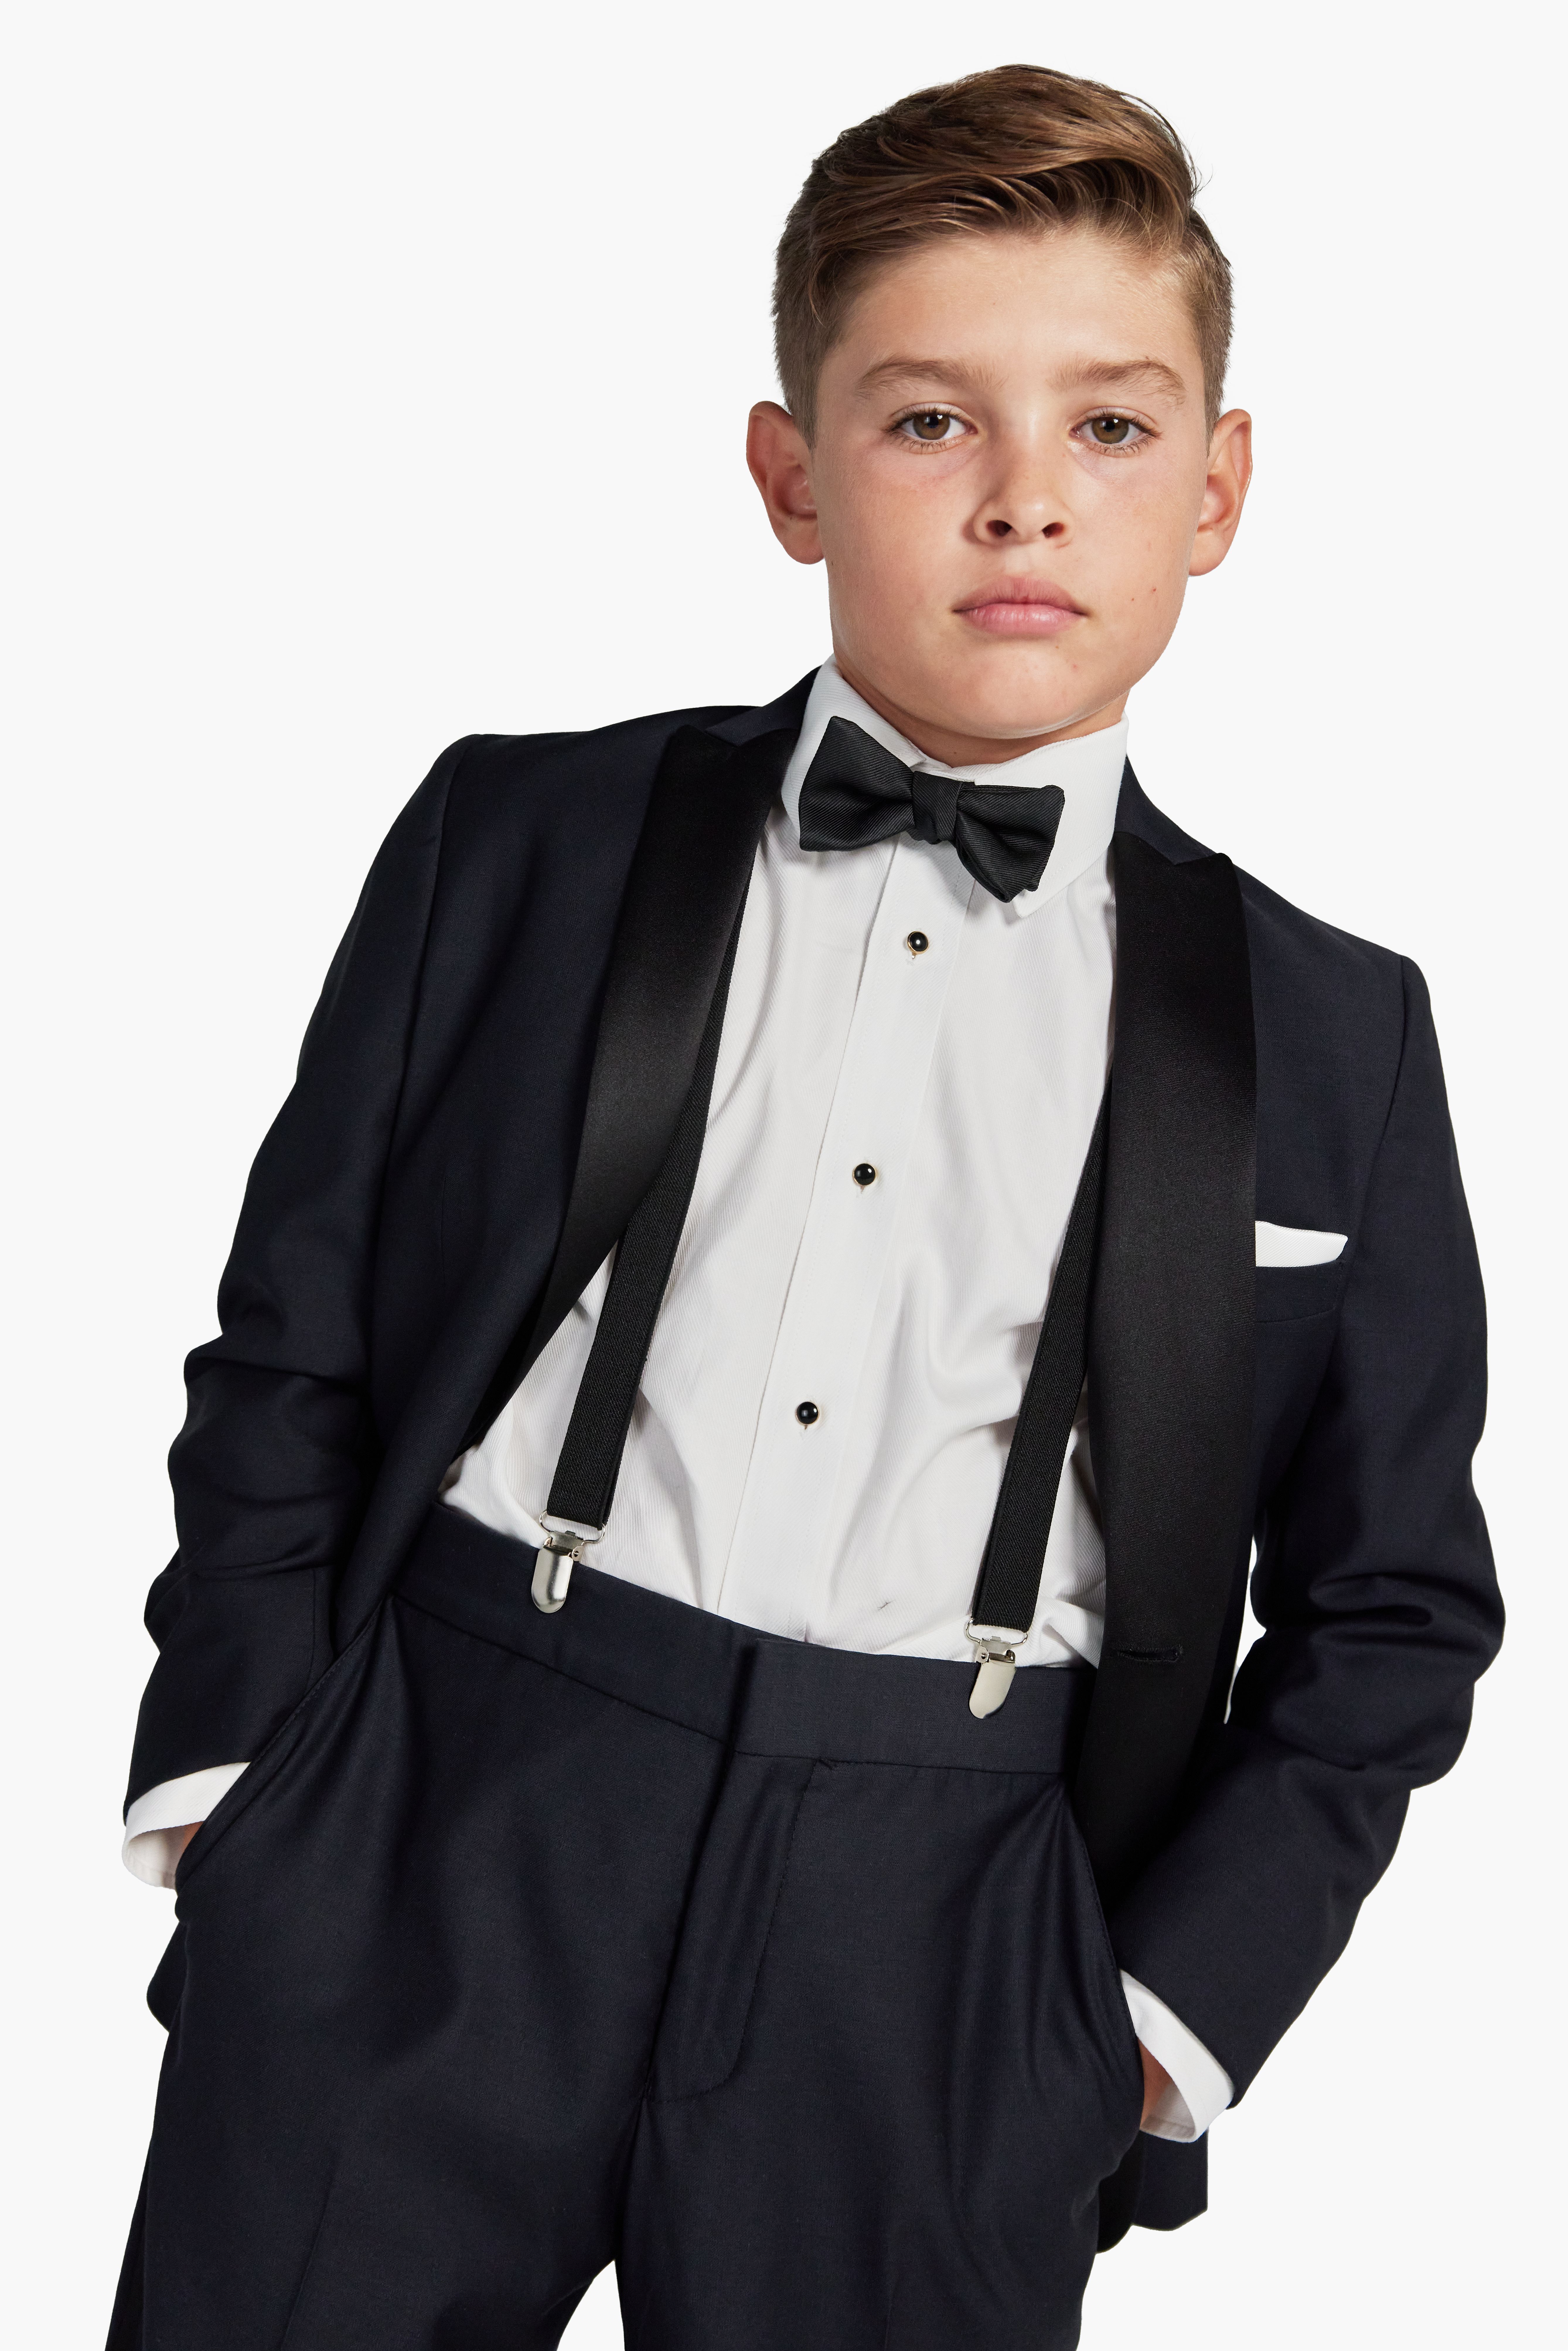 Black Peak Lapel Tuxedo for kids, boys, children, and teens